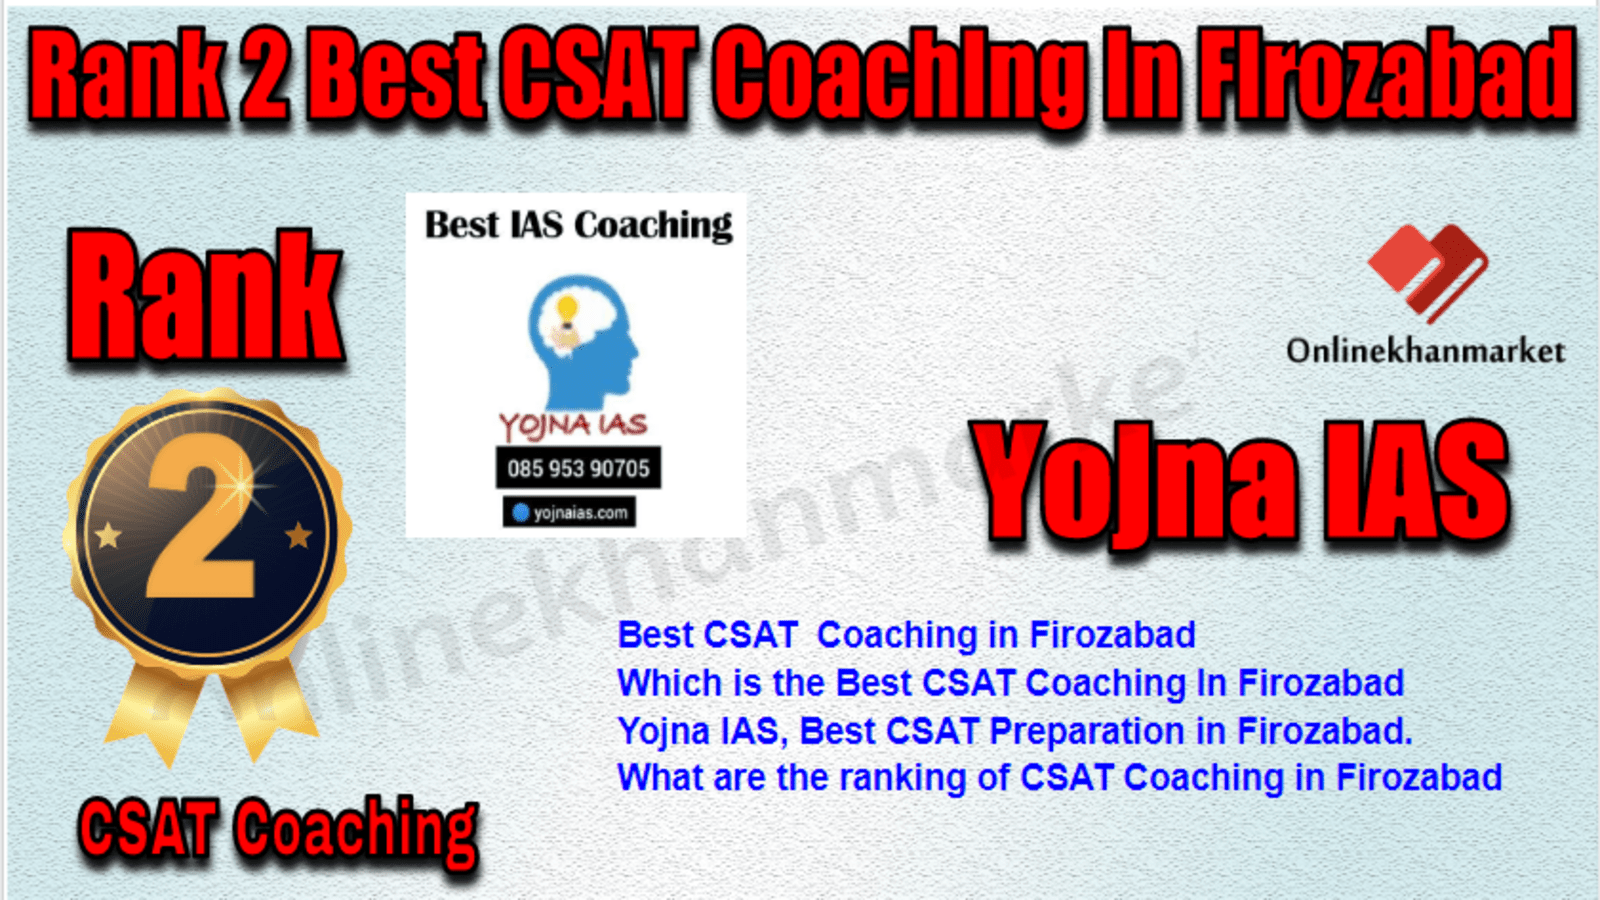 Rank 2 Best CSAT Coaching in Firozabad